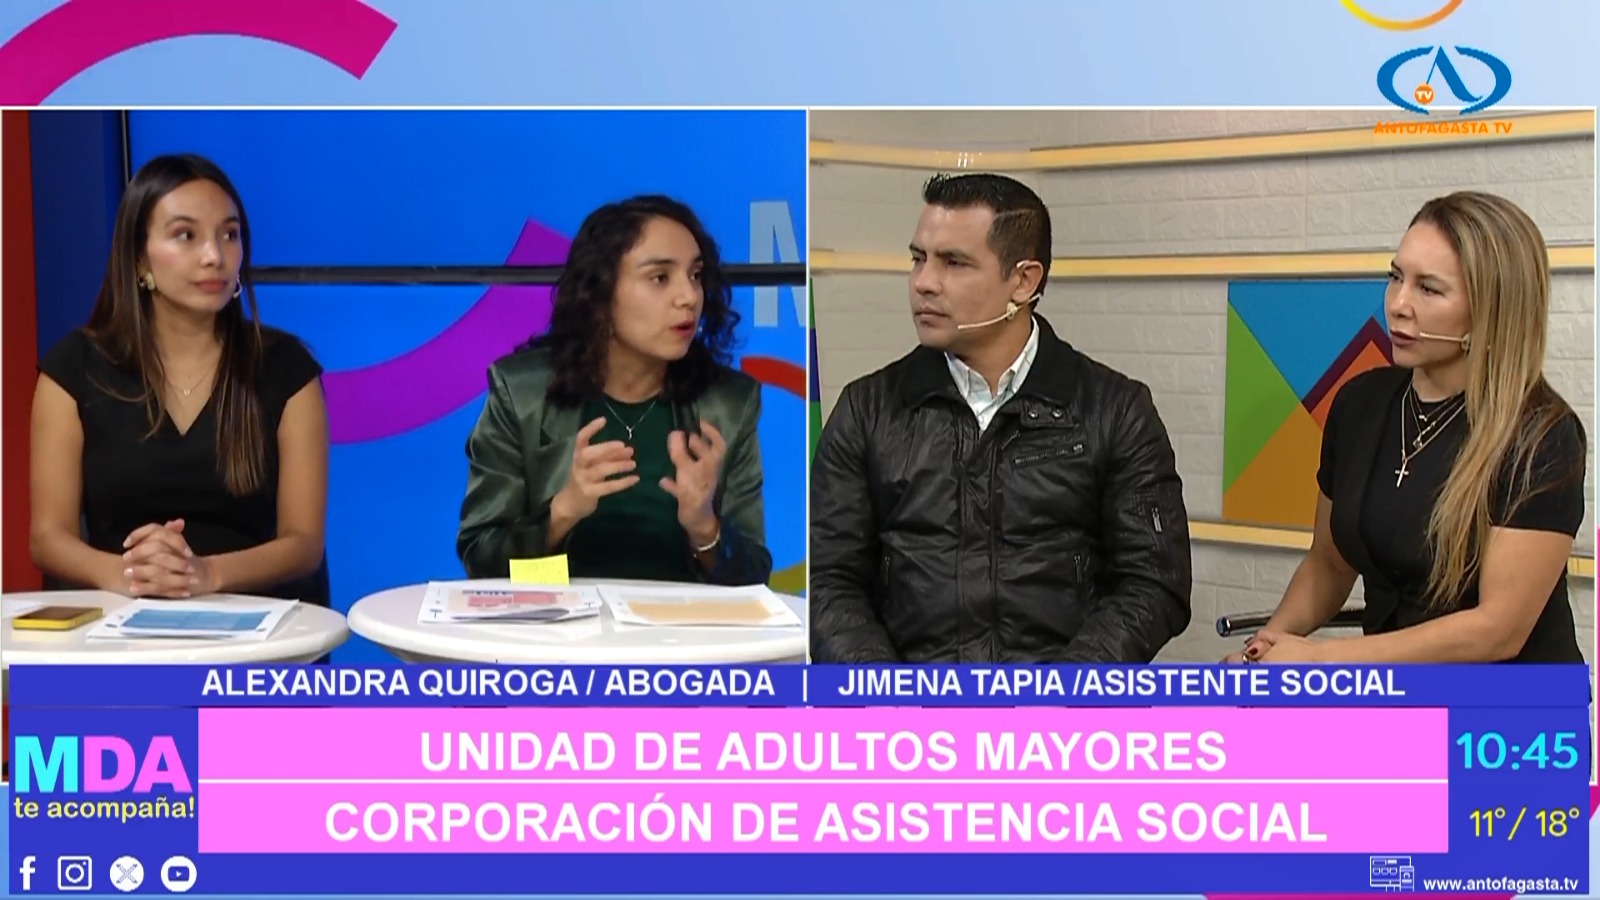 Profesionales de la unidad del Adulto Mayor participan en el Matinal de Antofagasta TV